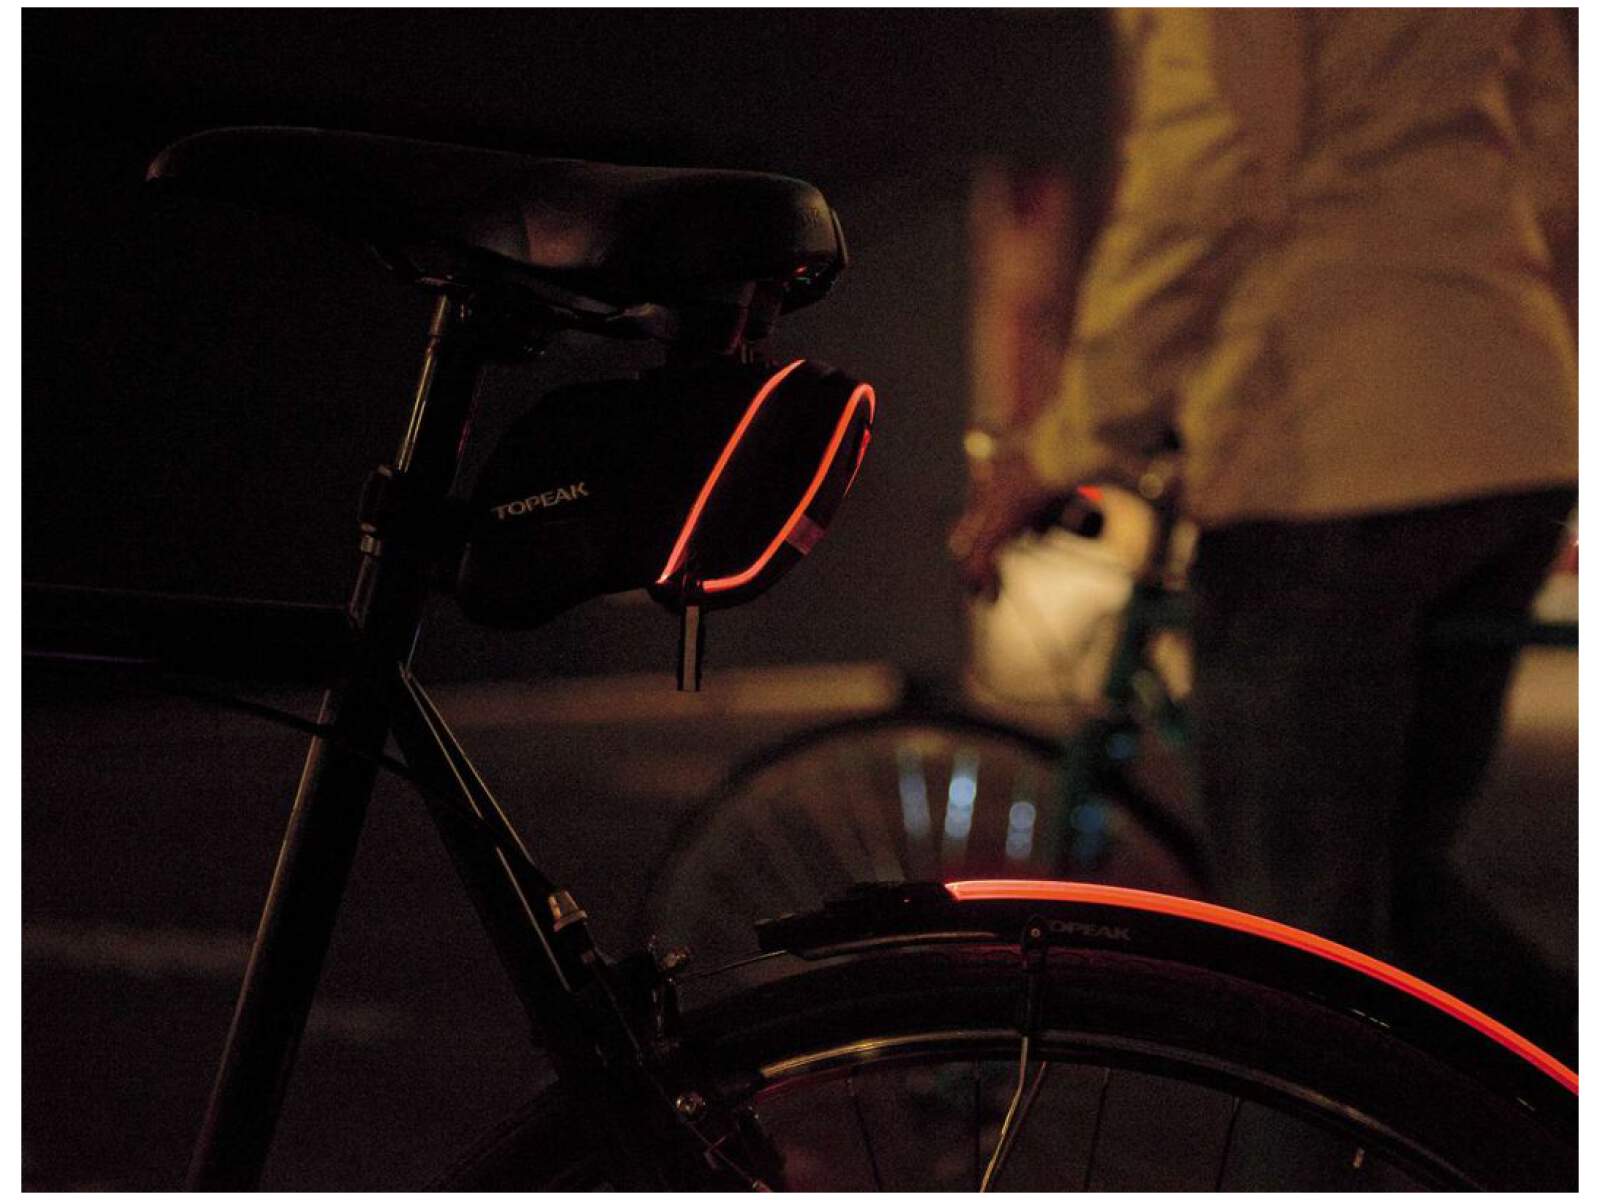 Torba rowerowa podsiodłowa Topeak AERO WEDGE iGLOW SMALL (0,5W LED, W/FIXER)